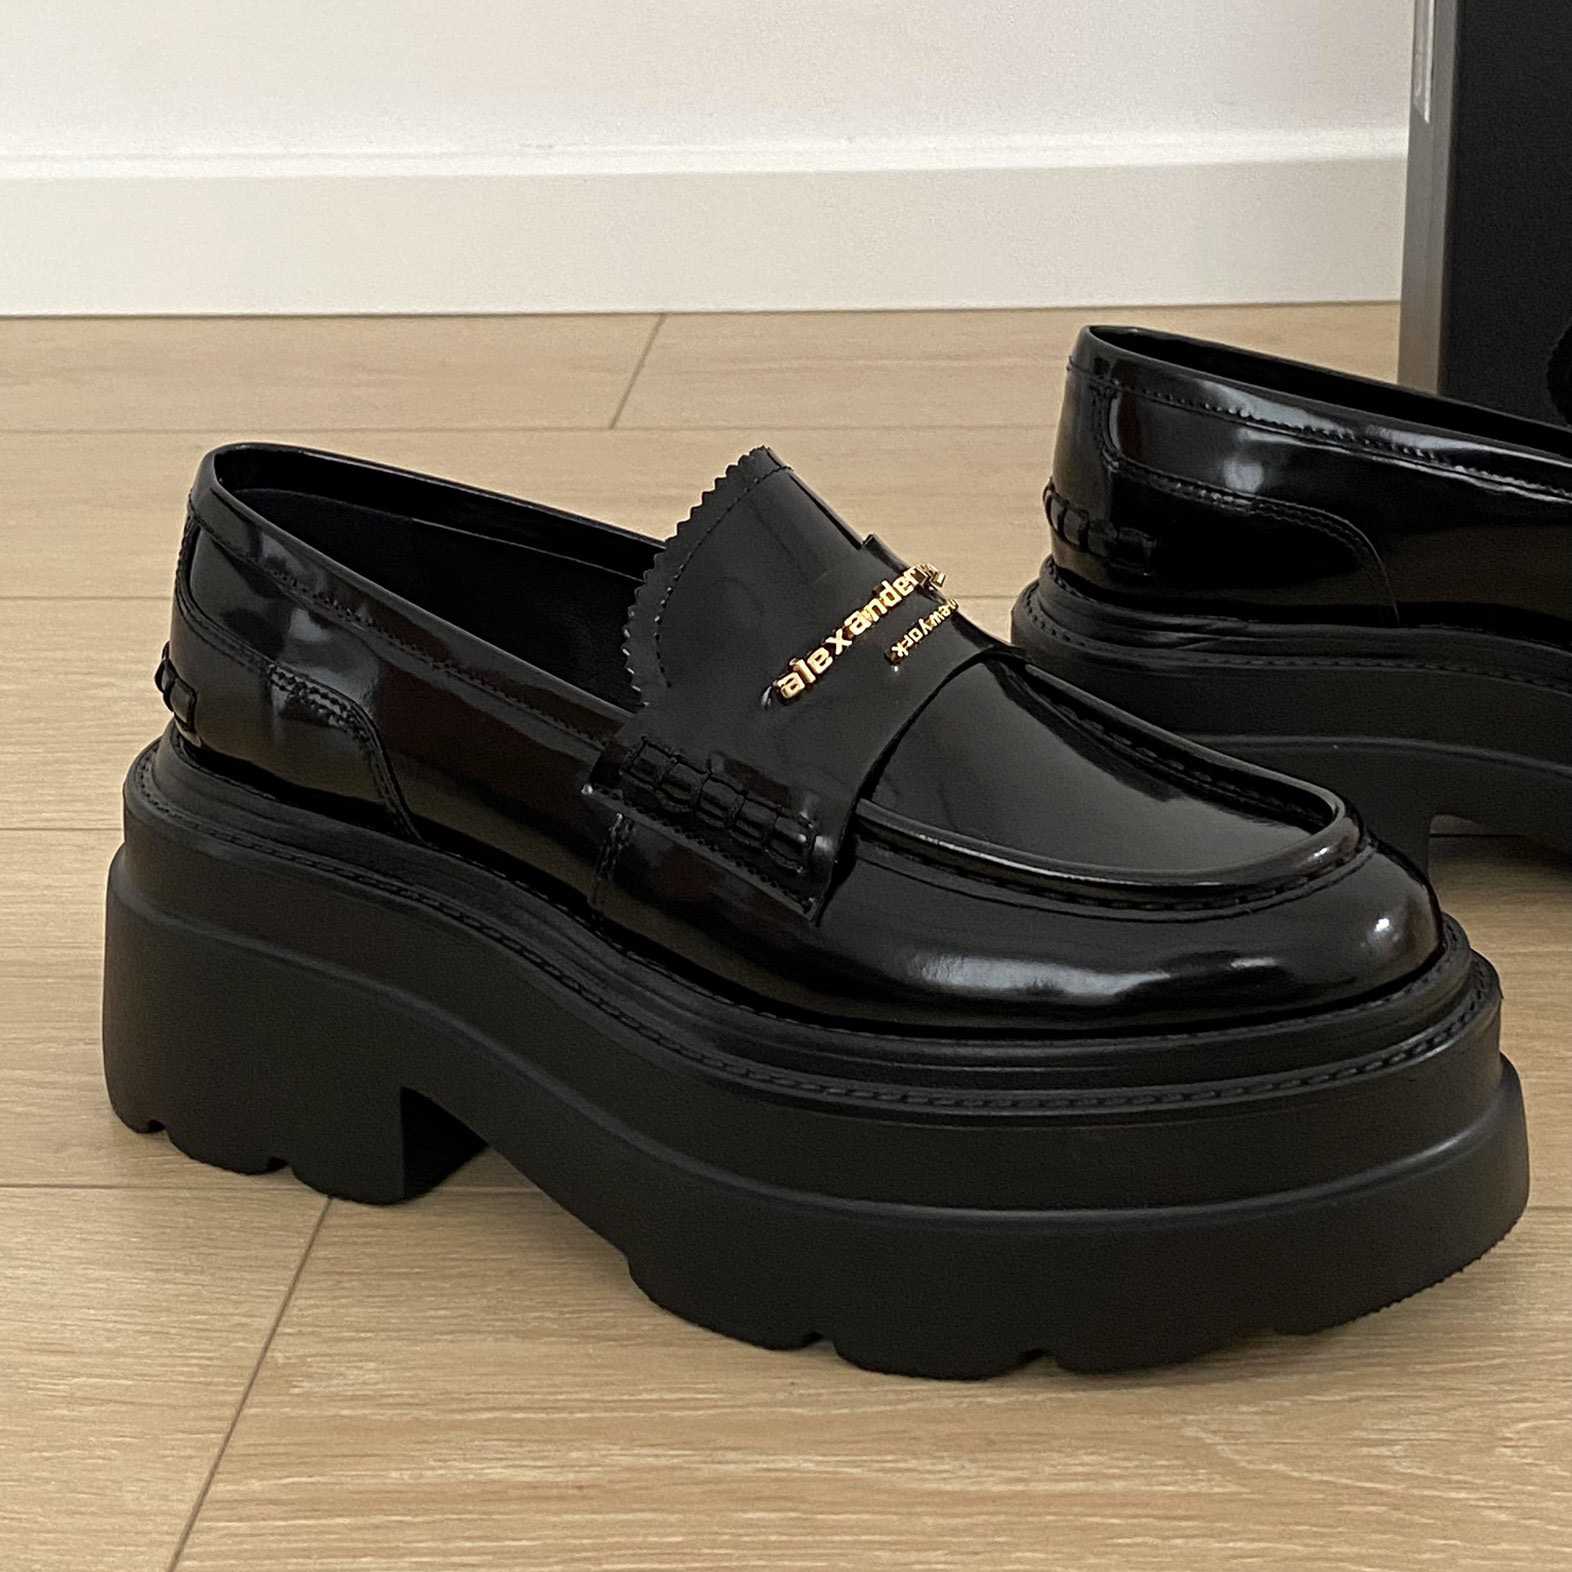 Alexander Wang Carter Platform Loafer In Leather - DesignerGu